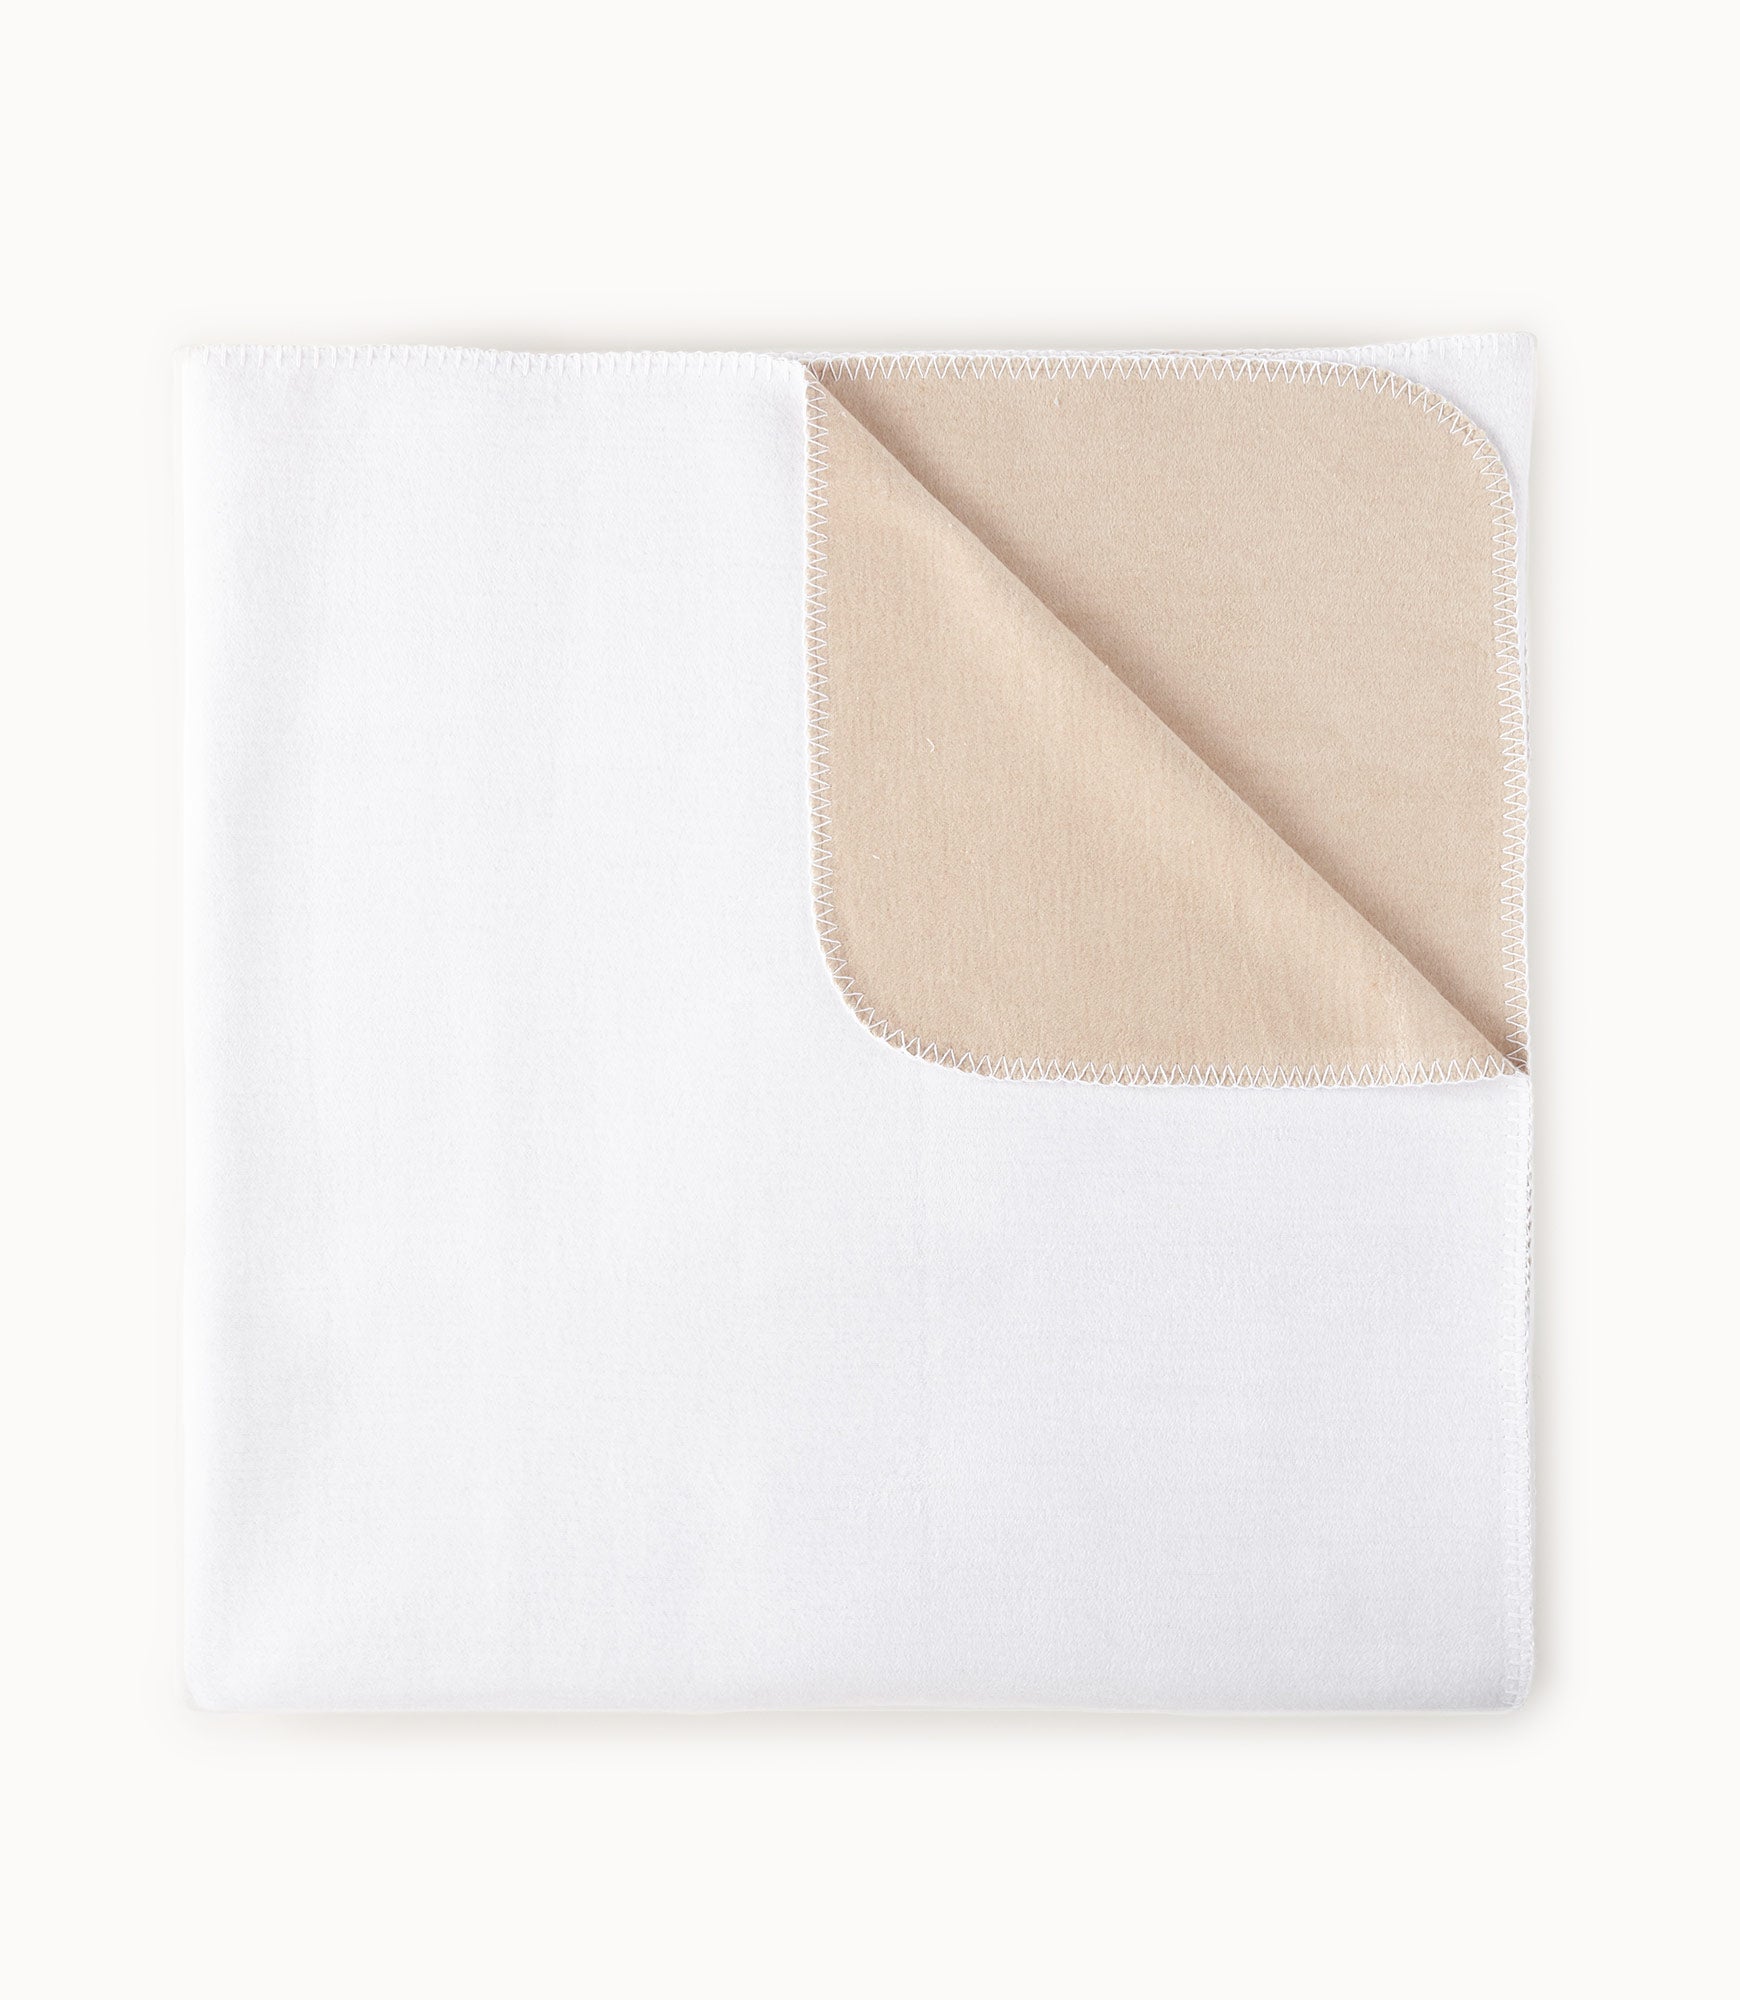 Alta Reversible Cotton Blanket White